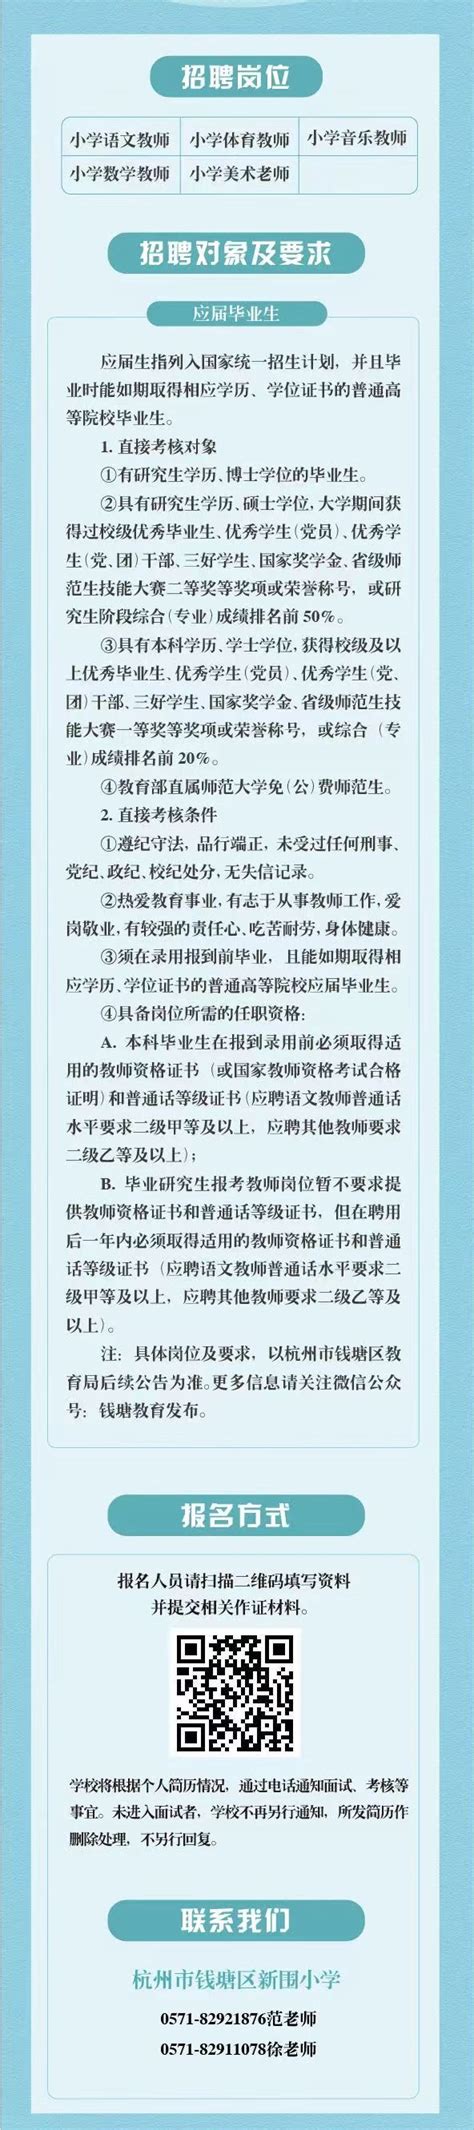 2021年浙江省杭州高级中学教师招聘公告-杭州教师招聘网.